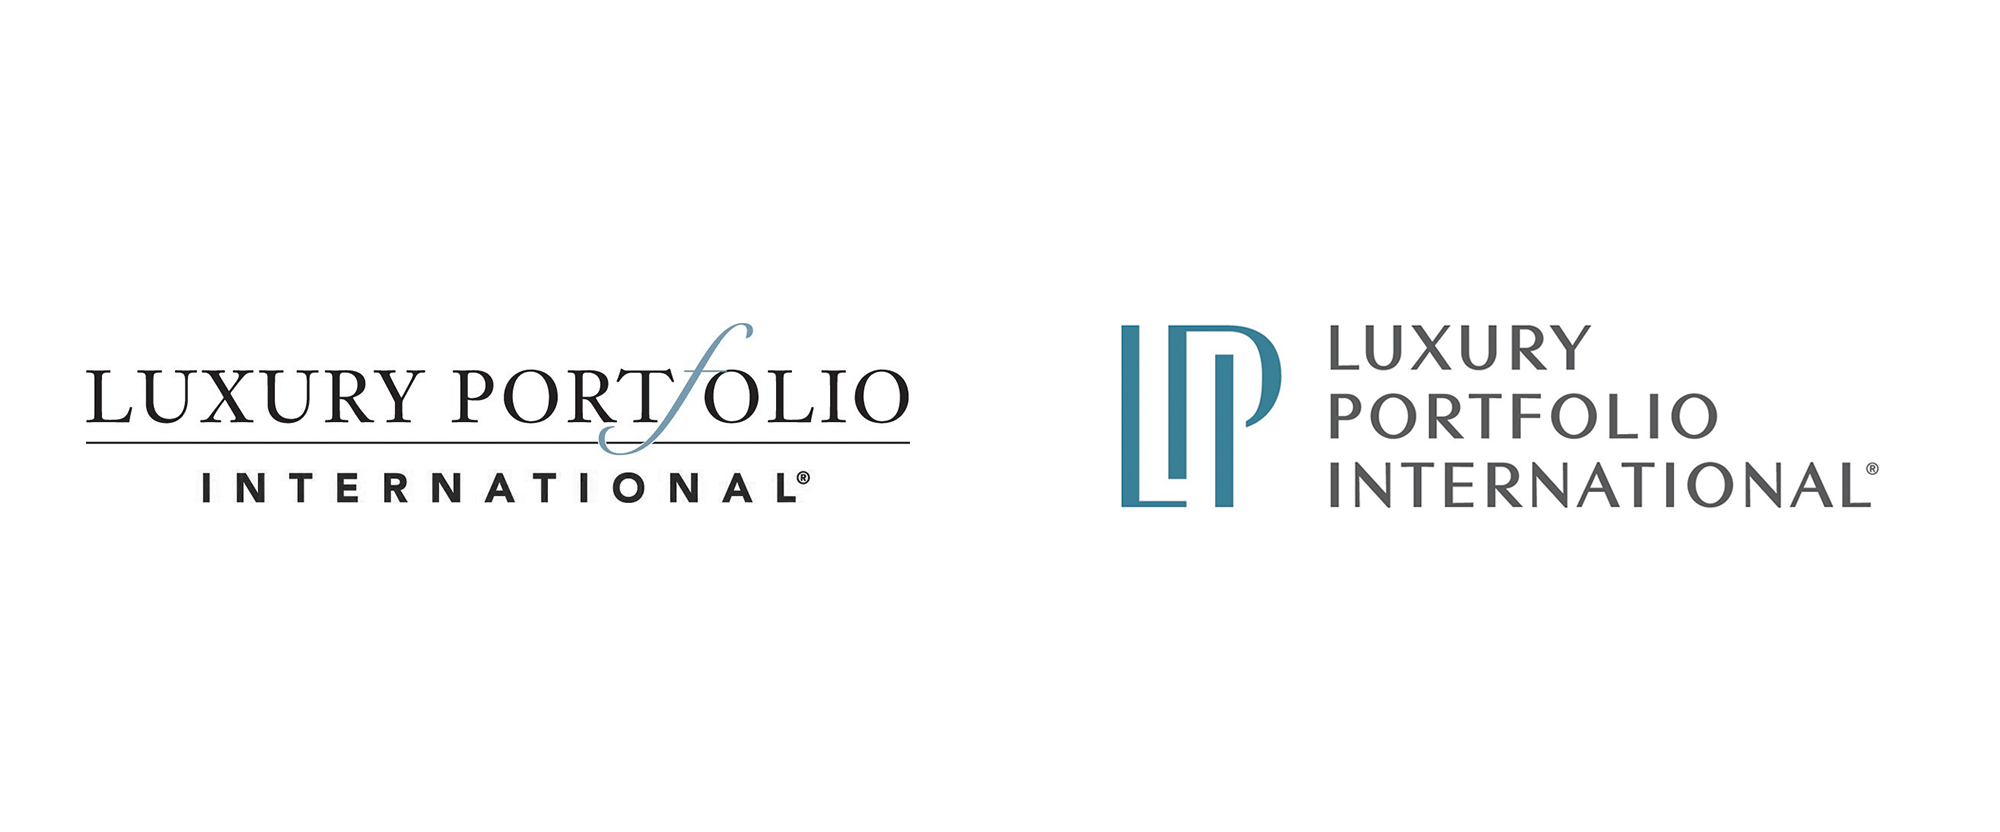 Portfolio Logo - Brand New: New Logo for Luxury Portfolio International